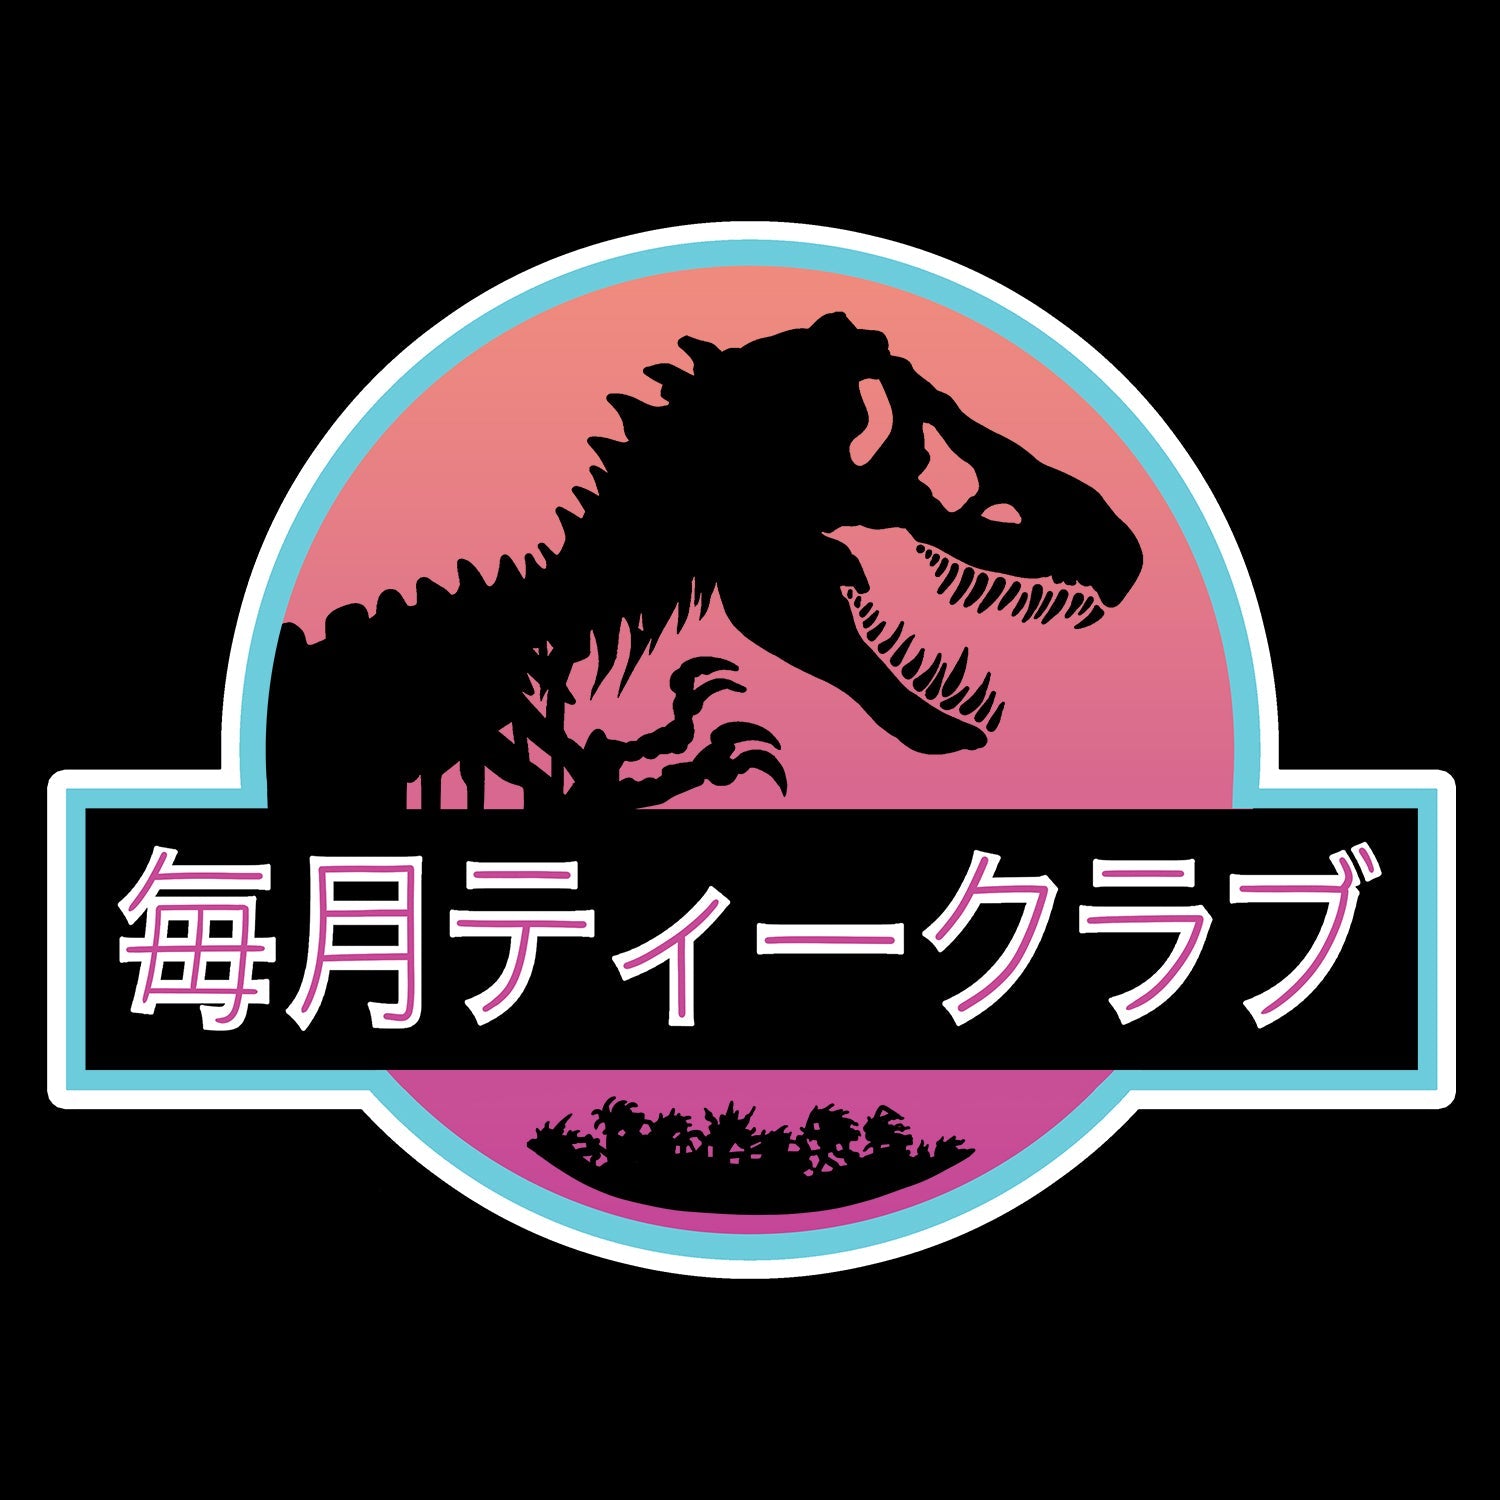 Jurassic Japan Kids T Shirt